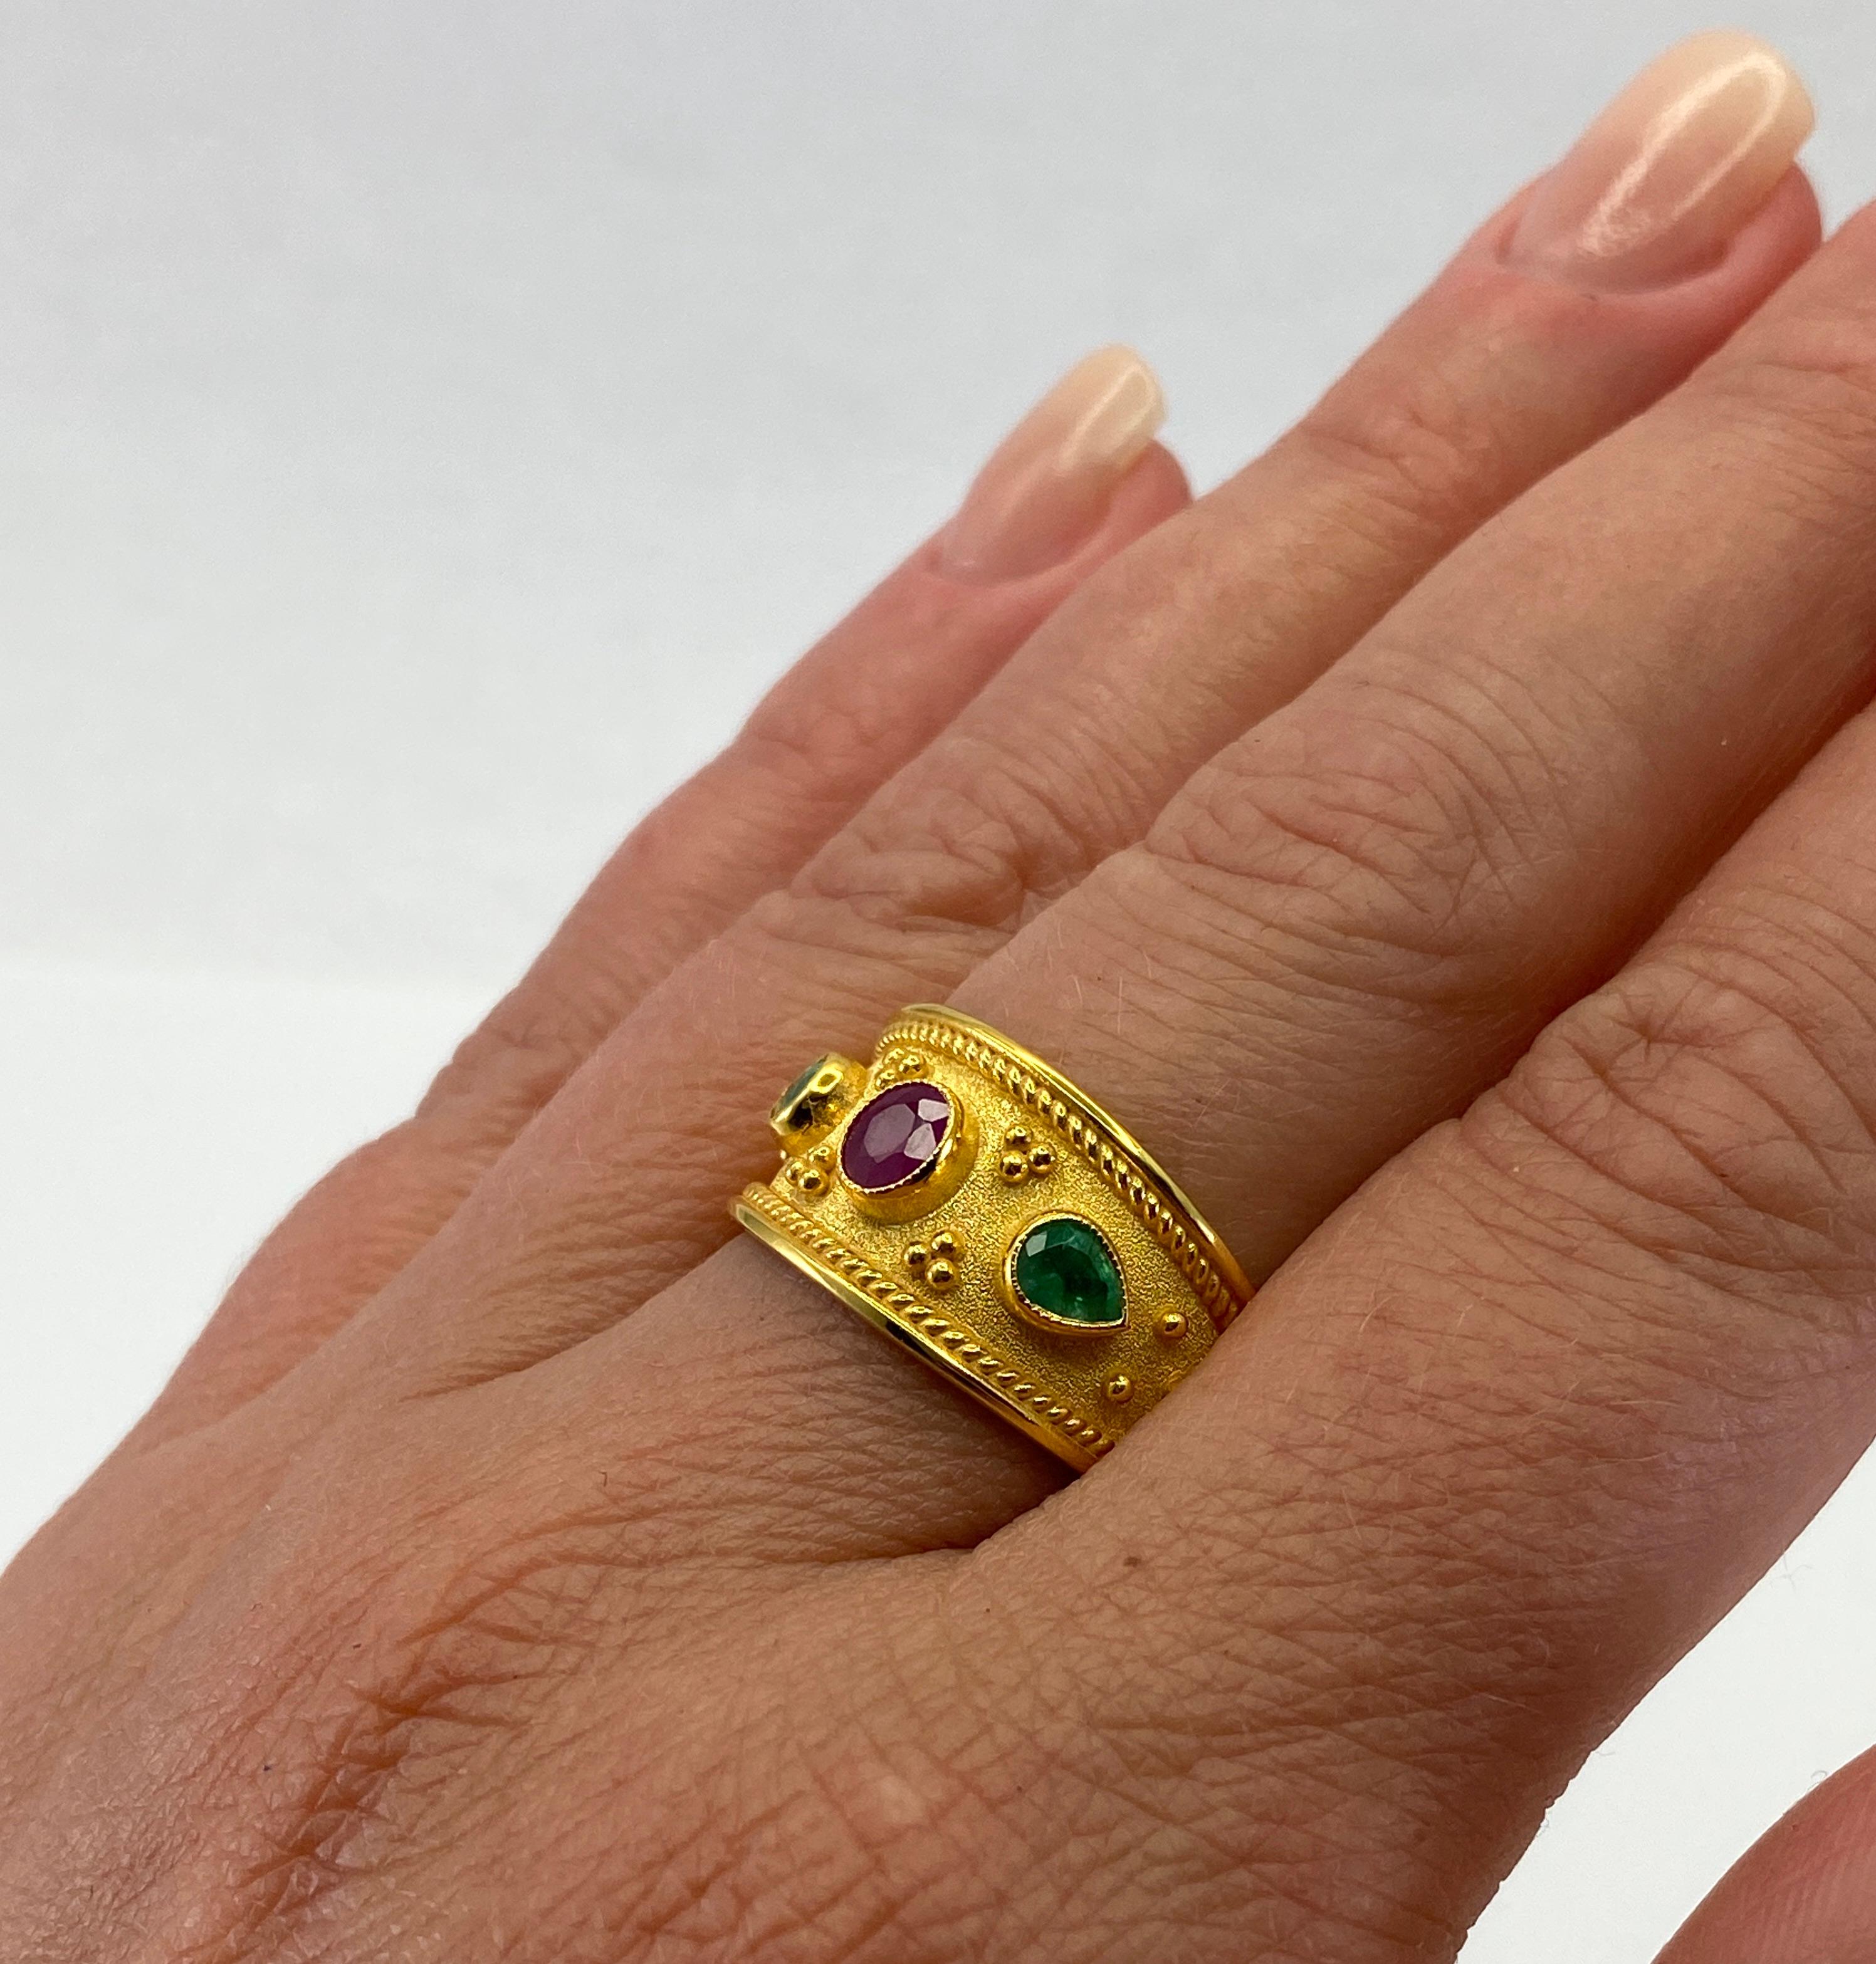 Präsentiert S.Georgios Designer 18 Karat massivem Gelbgold Ring alle handgefertigt in byzantinischen Stil Verarbeitung mit einem einzigartigen Samt Hintergrund und Granulation. Dieser Ring verfügt über 0,56 Karat oval geschliffenen Rubin in der